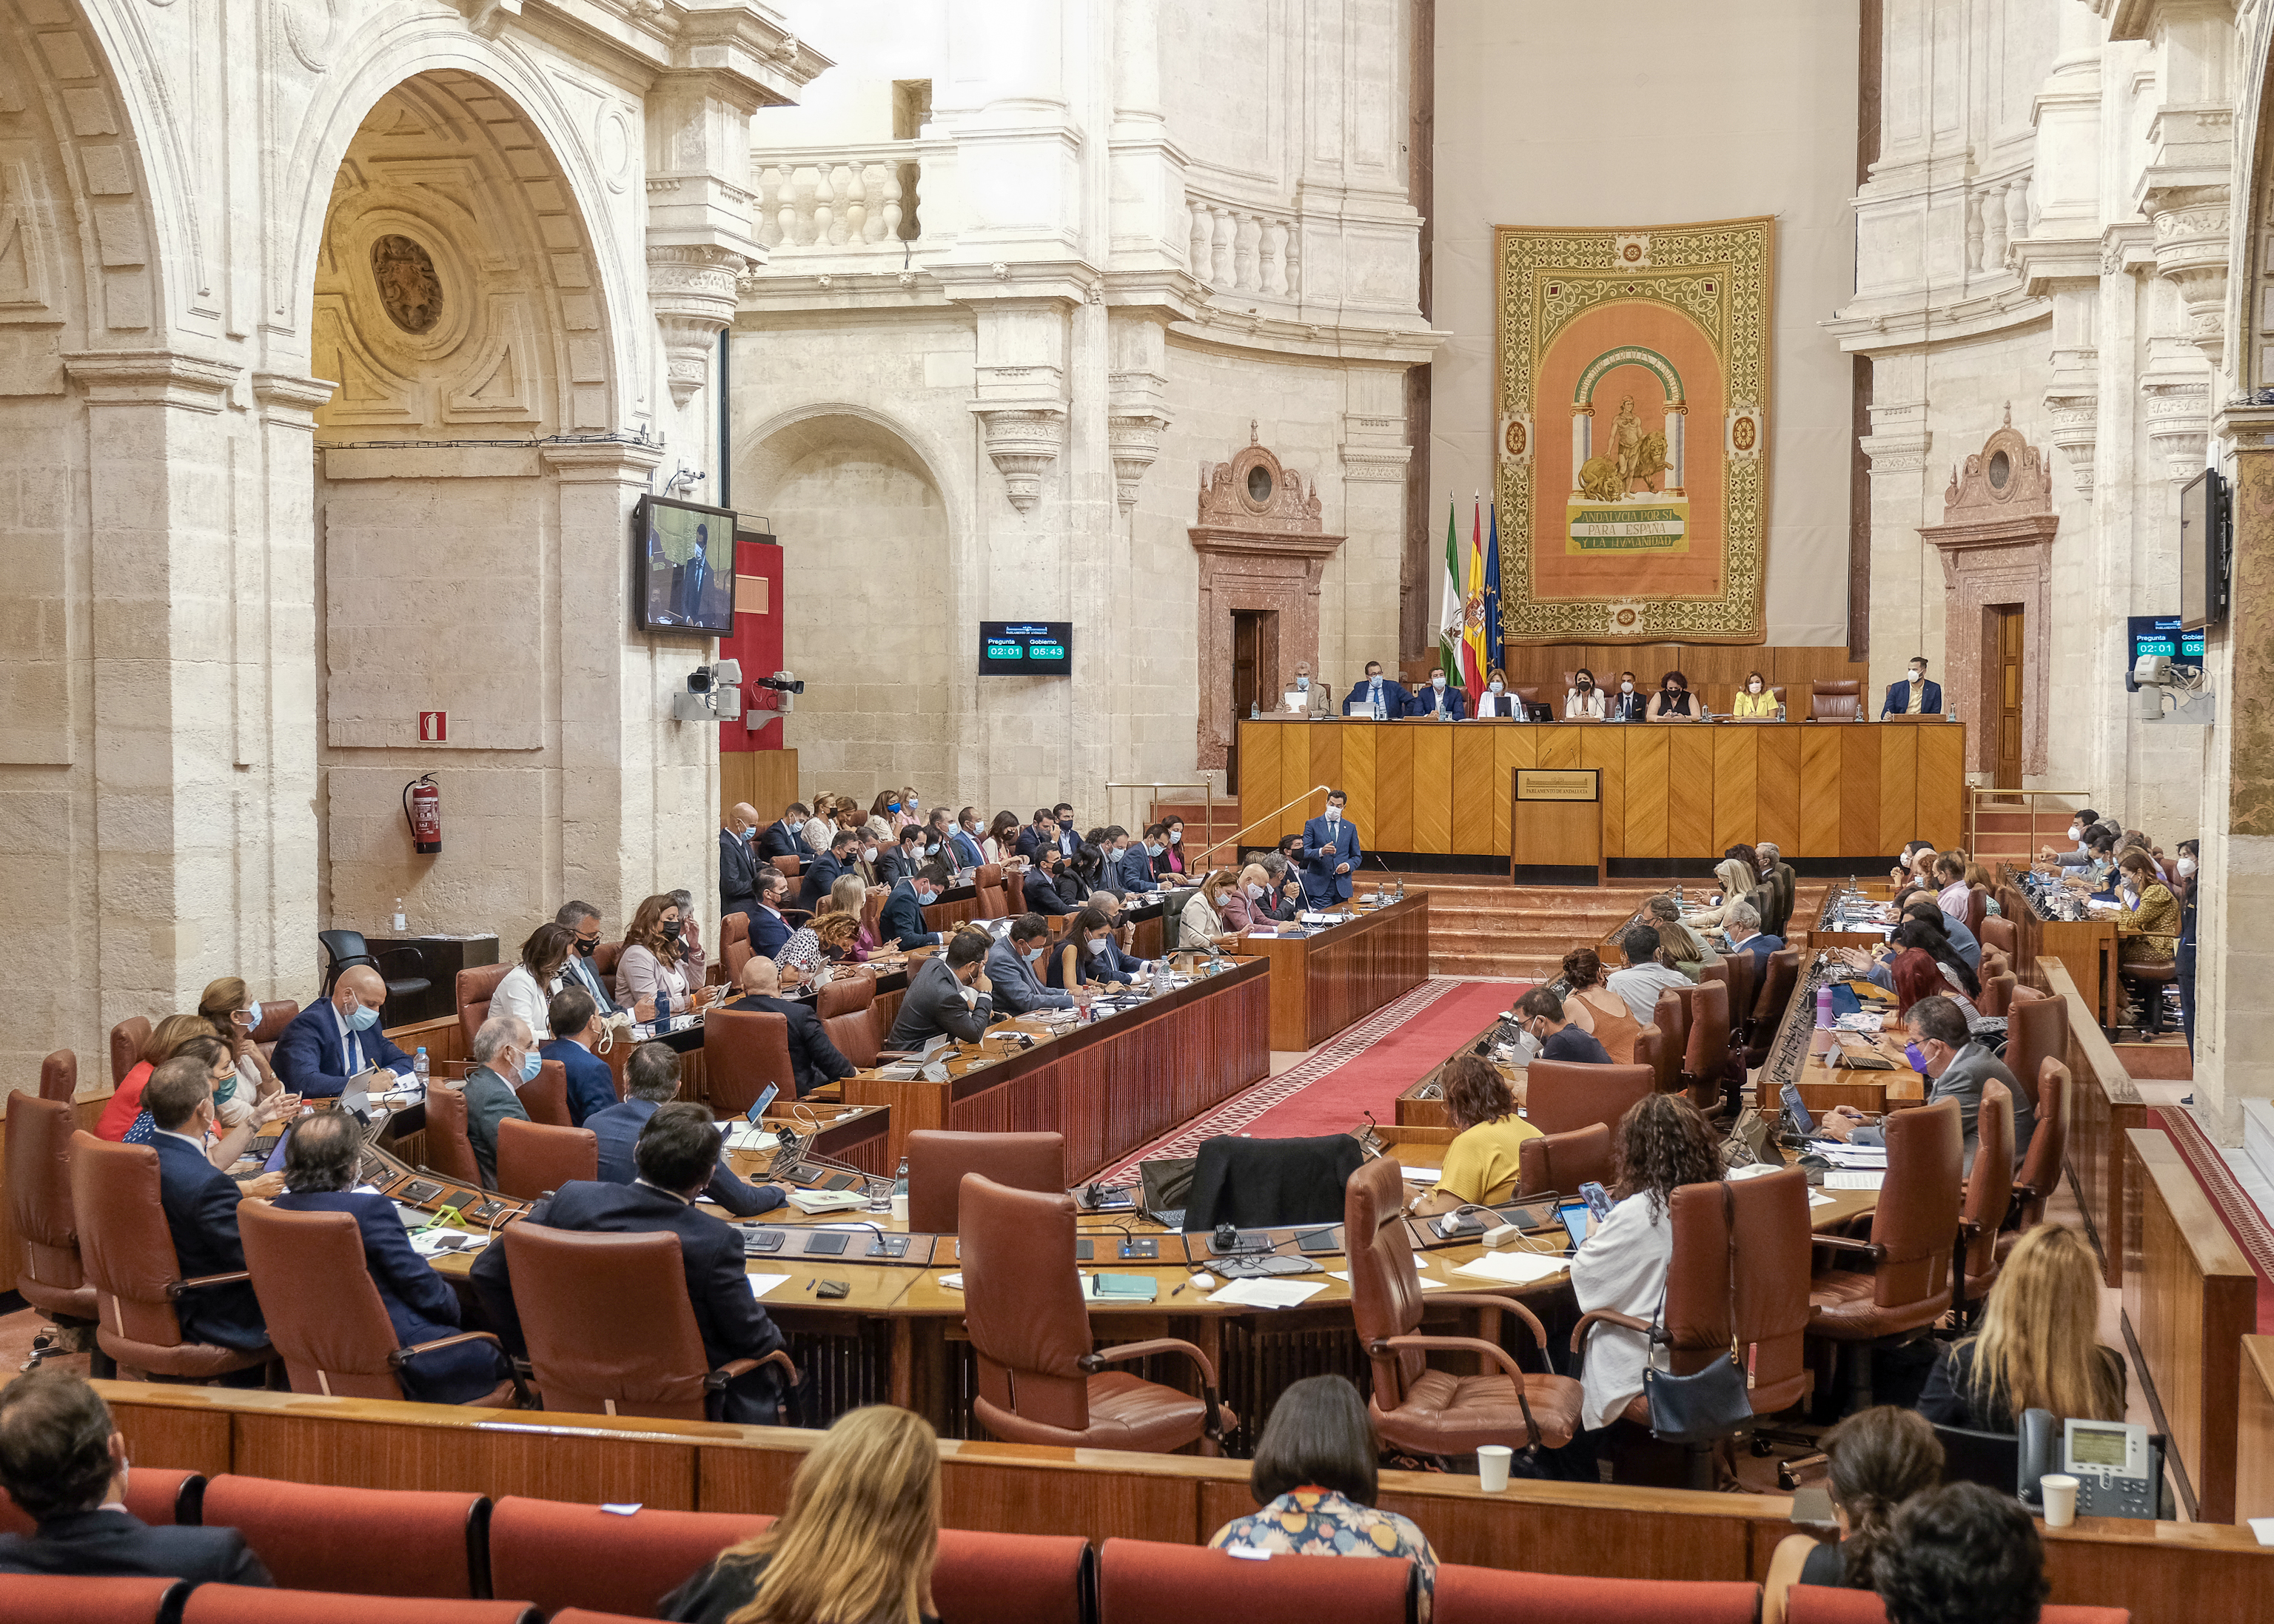  Sesin plenaria con aforo completo de parlamentarios durante la intervencin del presidente de la Junta de Andaluca 